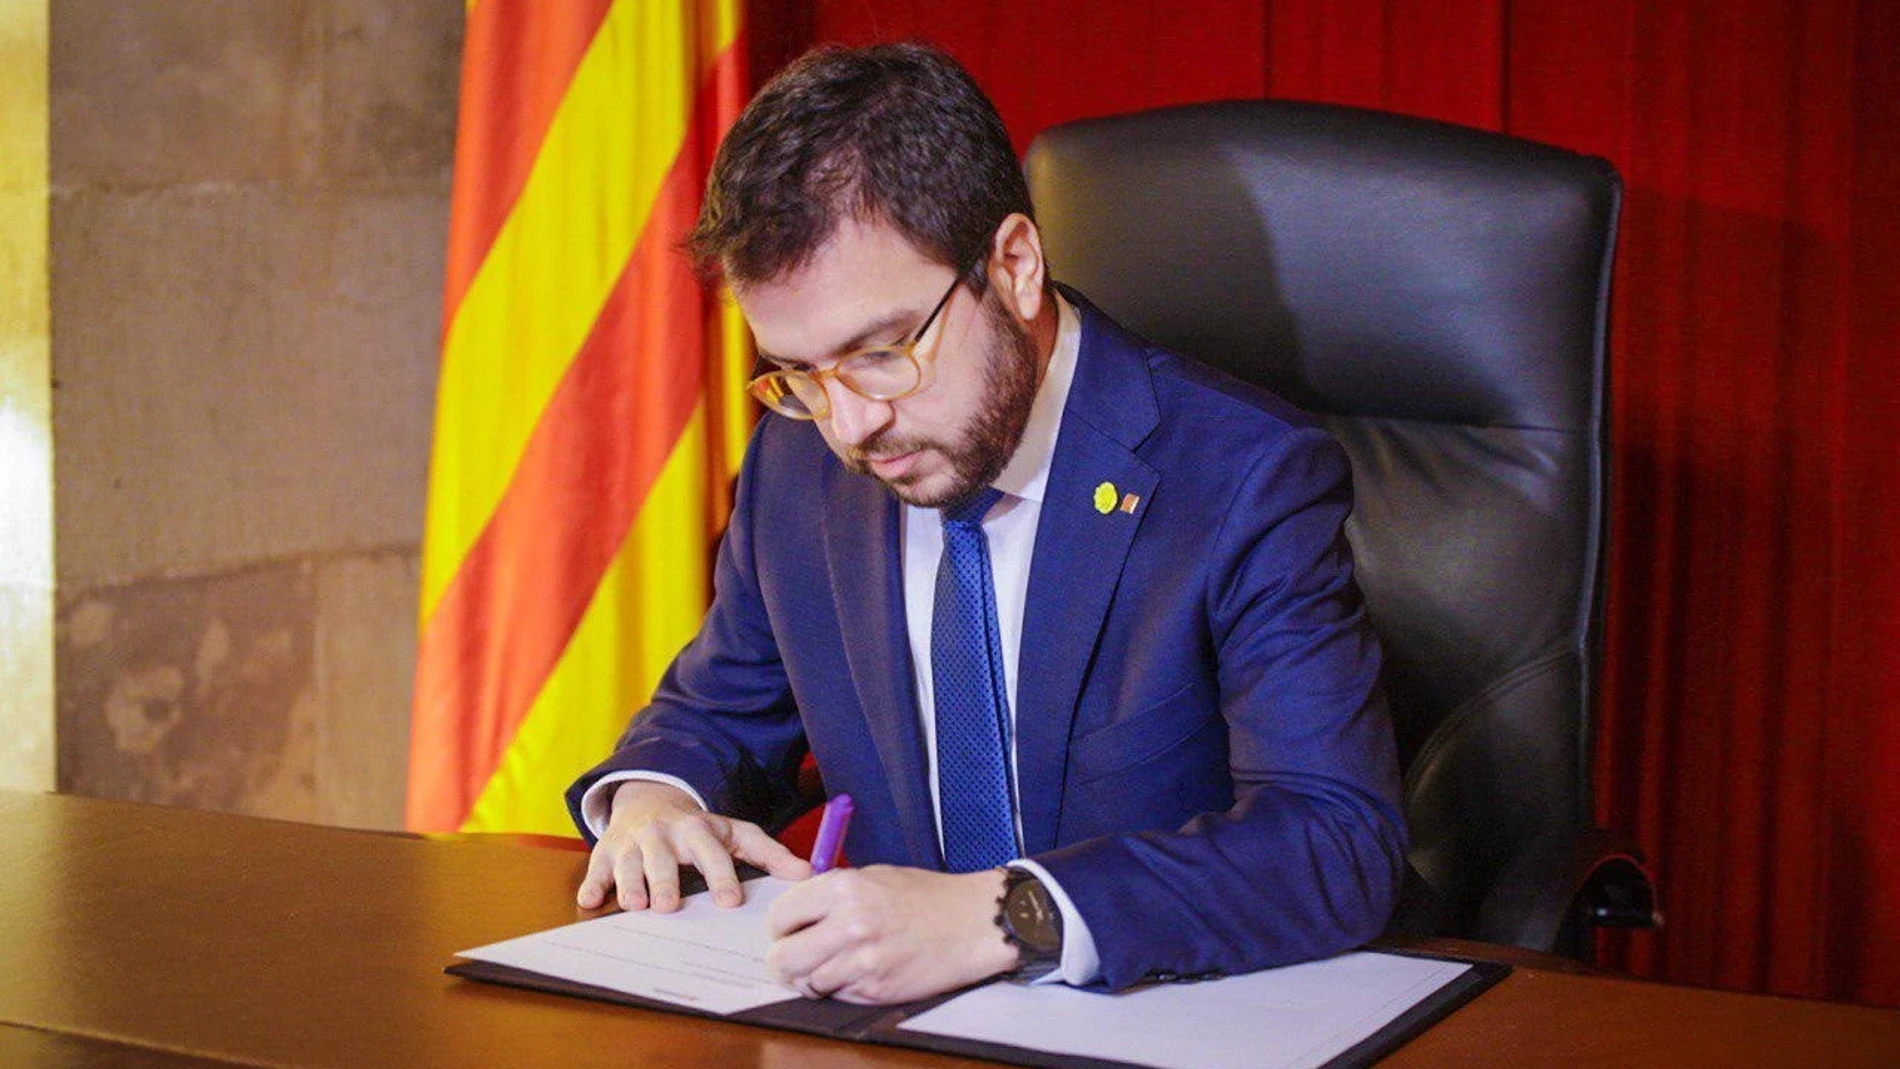 El vicepresidente de la Generalitat, Pere Aragonès, firma el decreto de convocatoria de elecciones para el 14 de febrero.